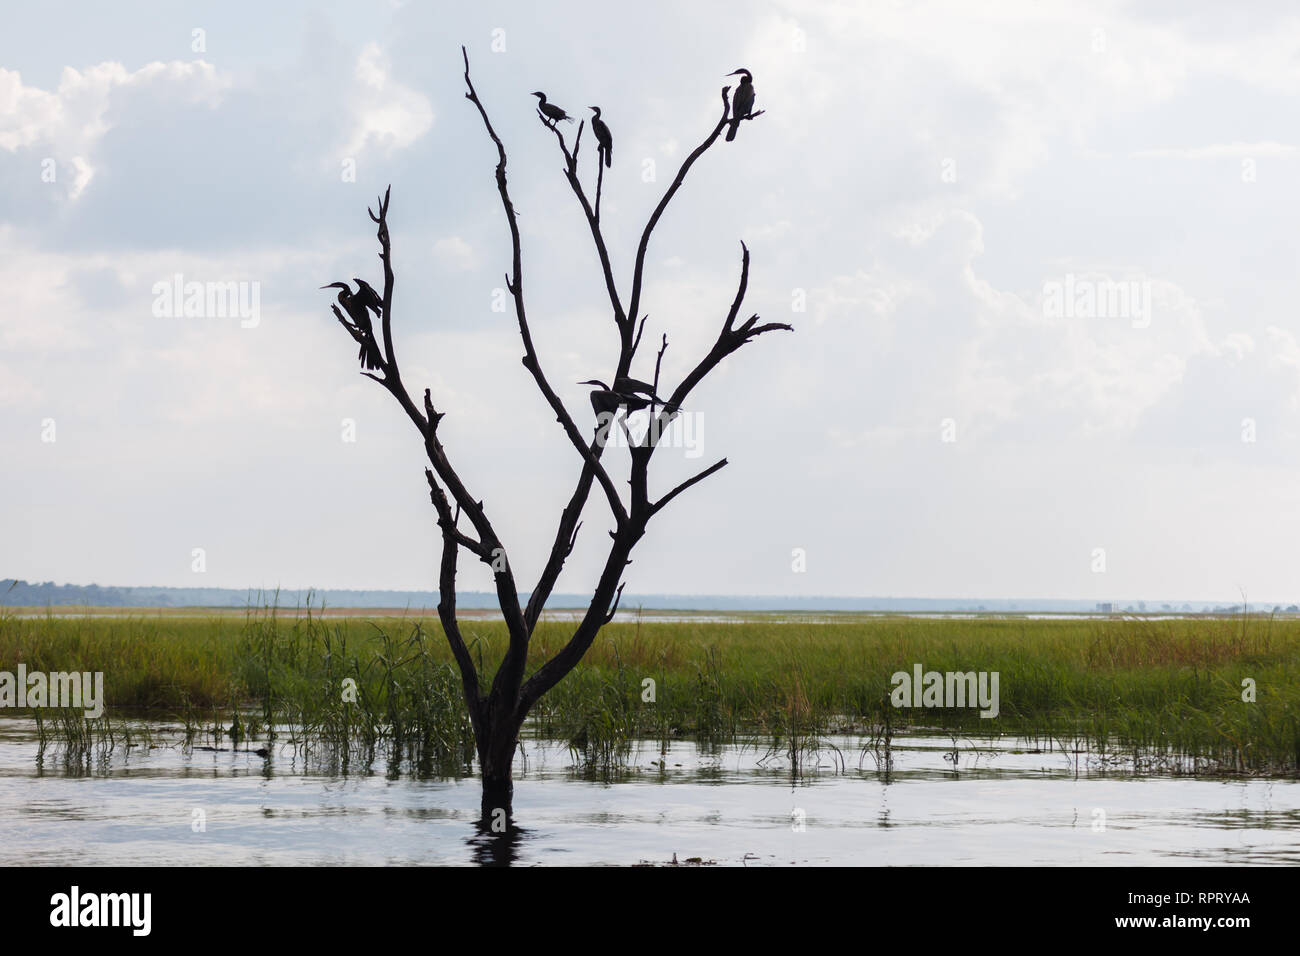 Chiusura del gregge di wattled cranes arroccato in albero morto a guardare la preda Foto Stock